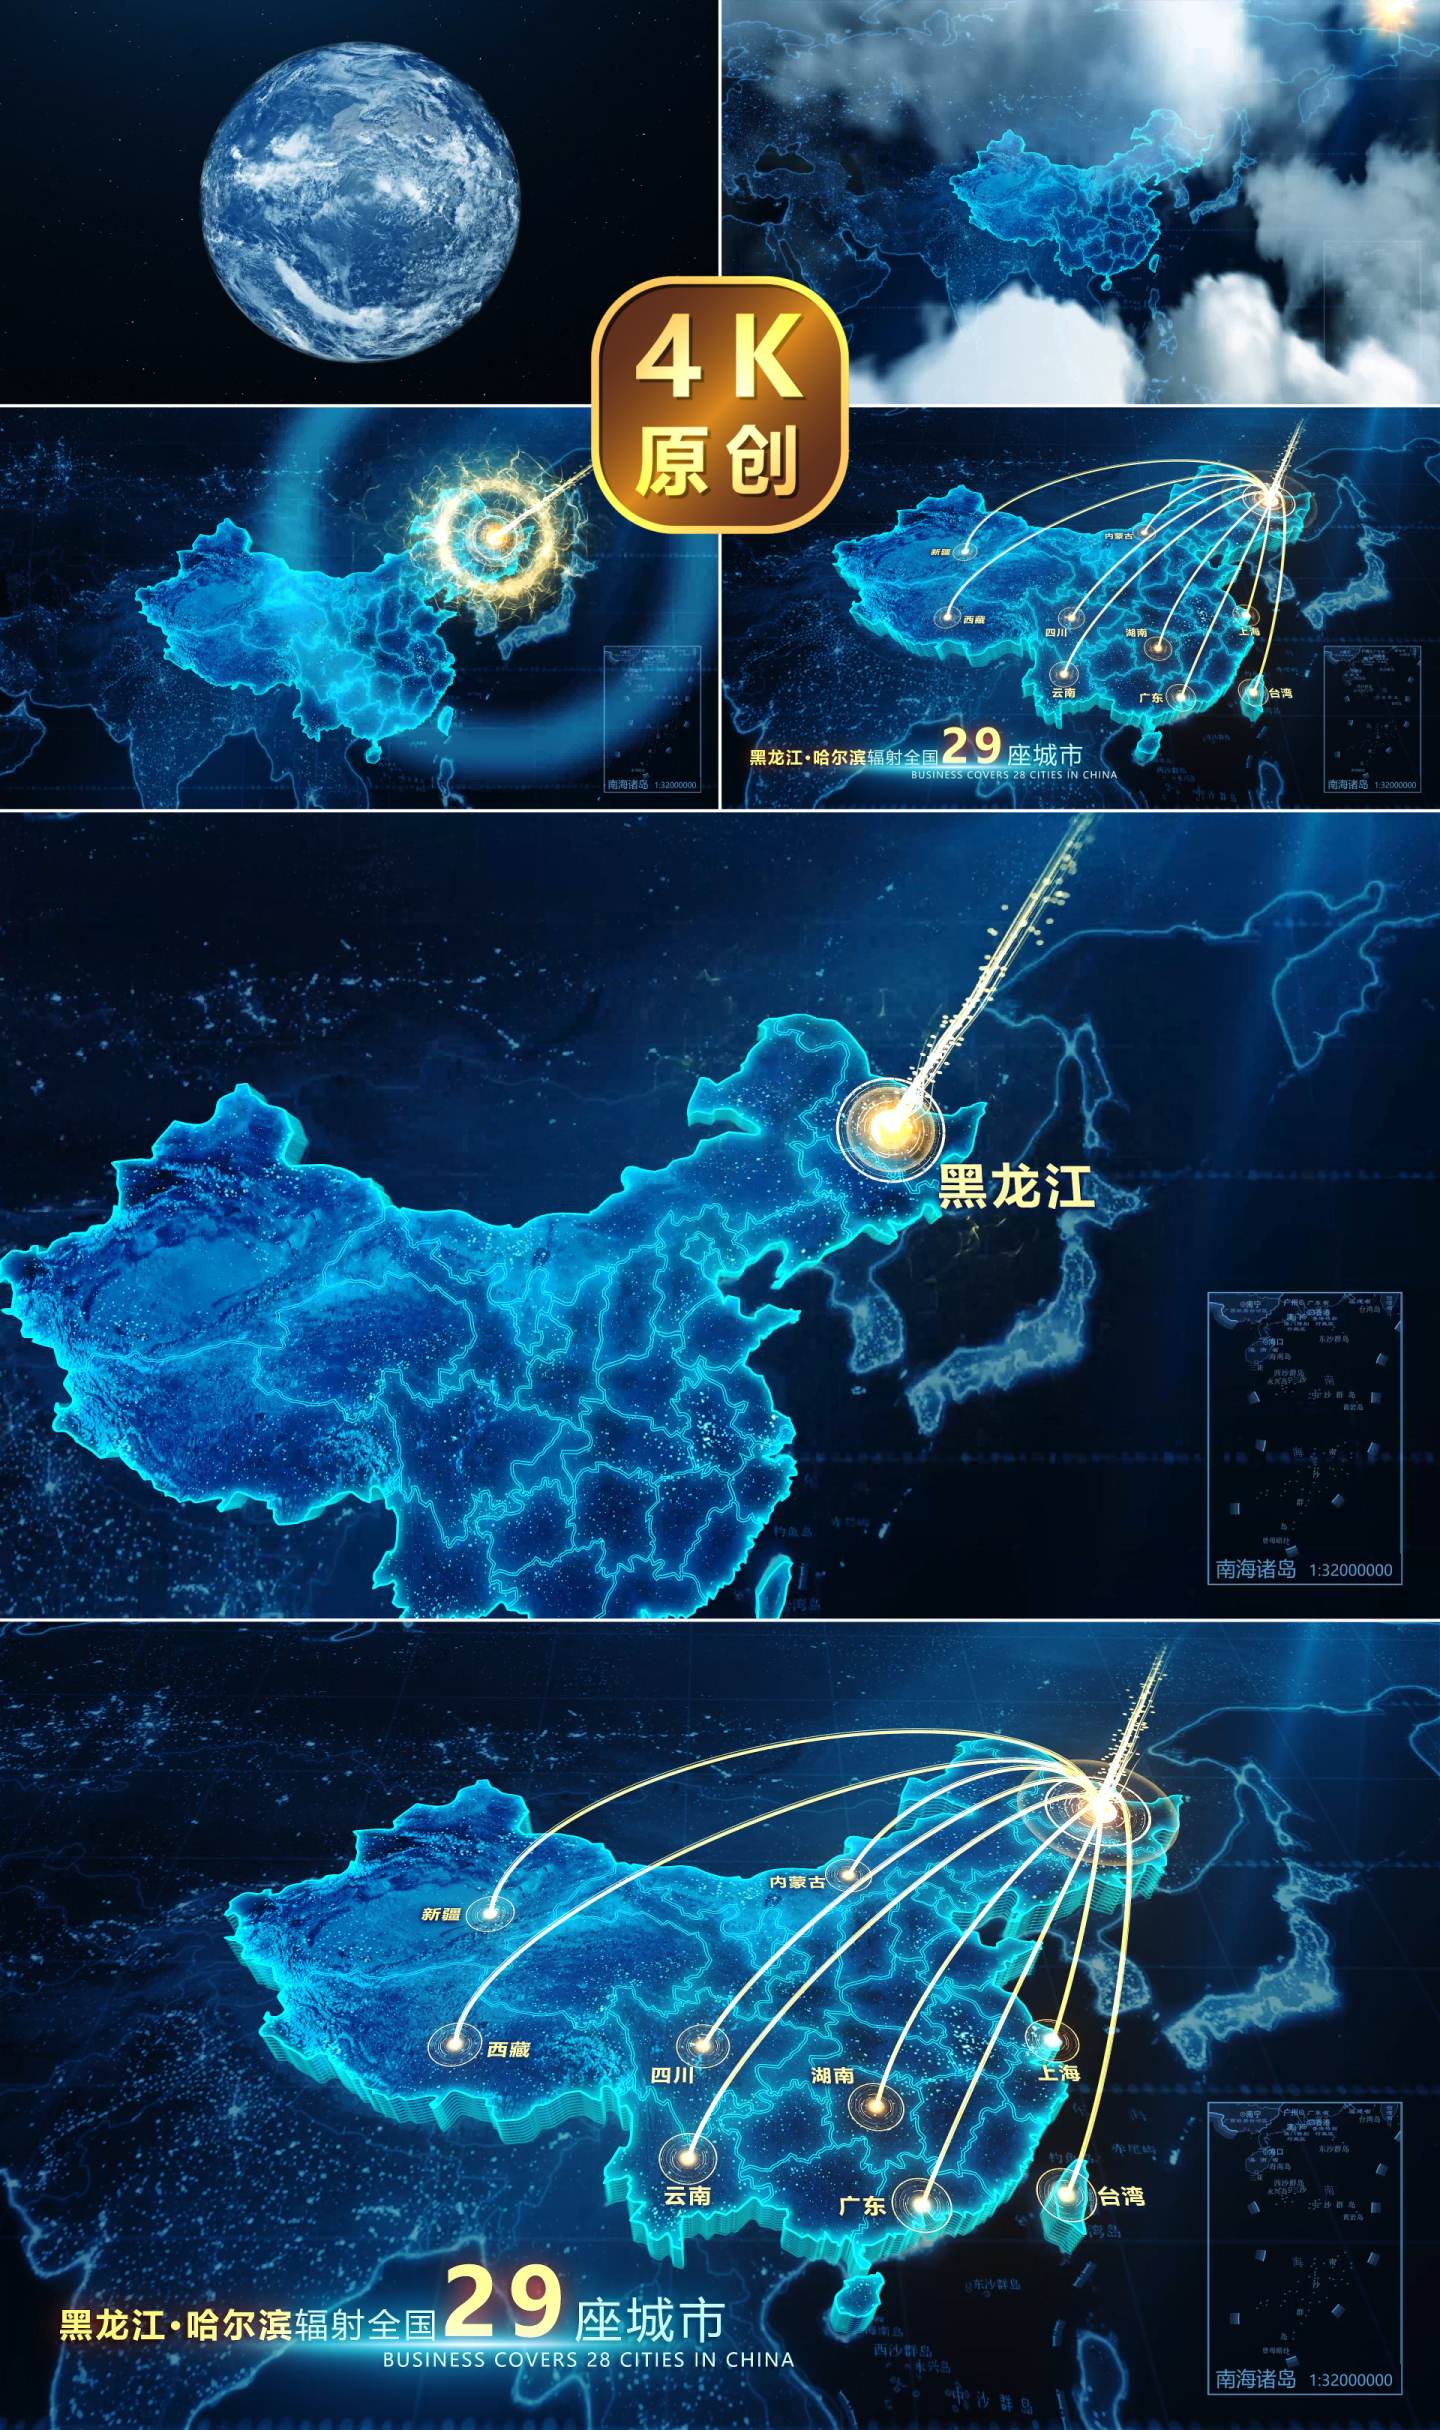 【黑龙江】地图辐射全国